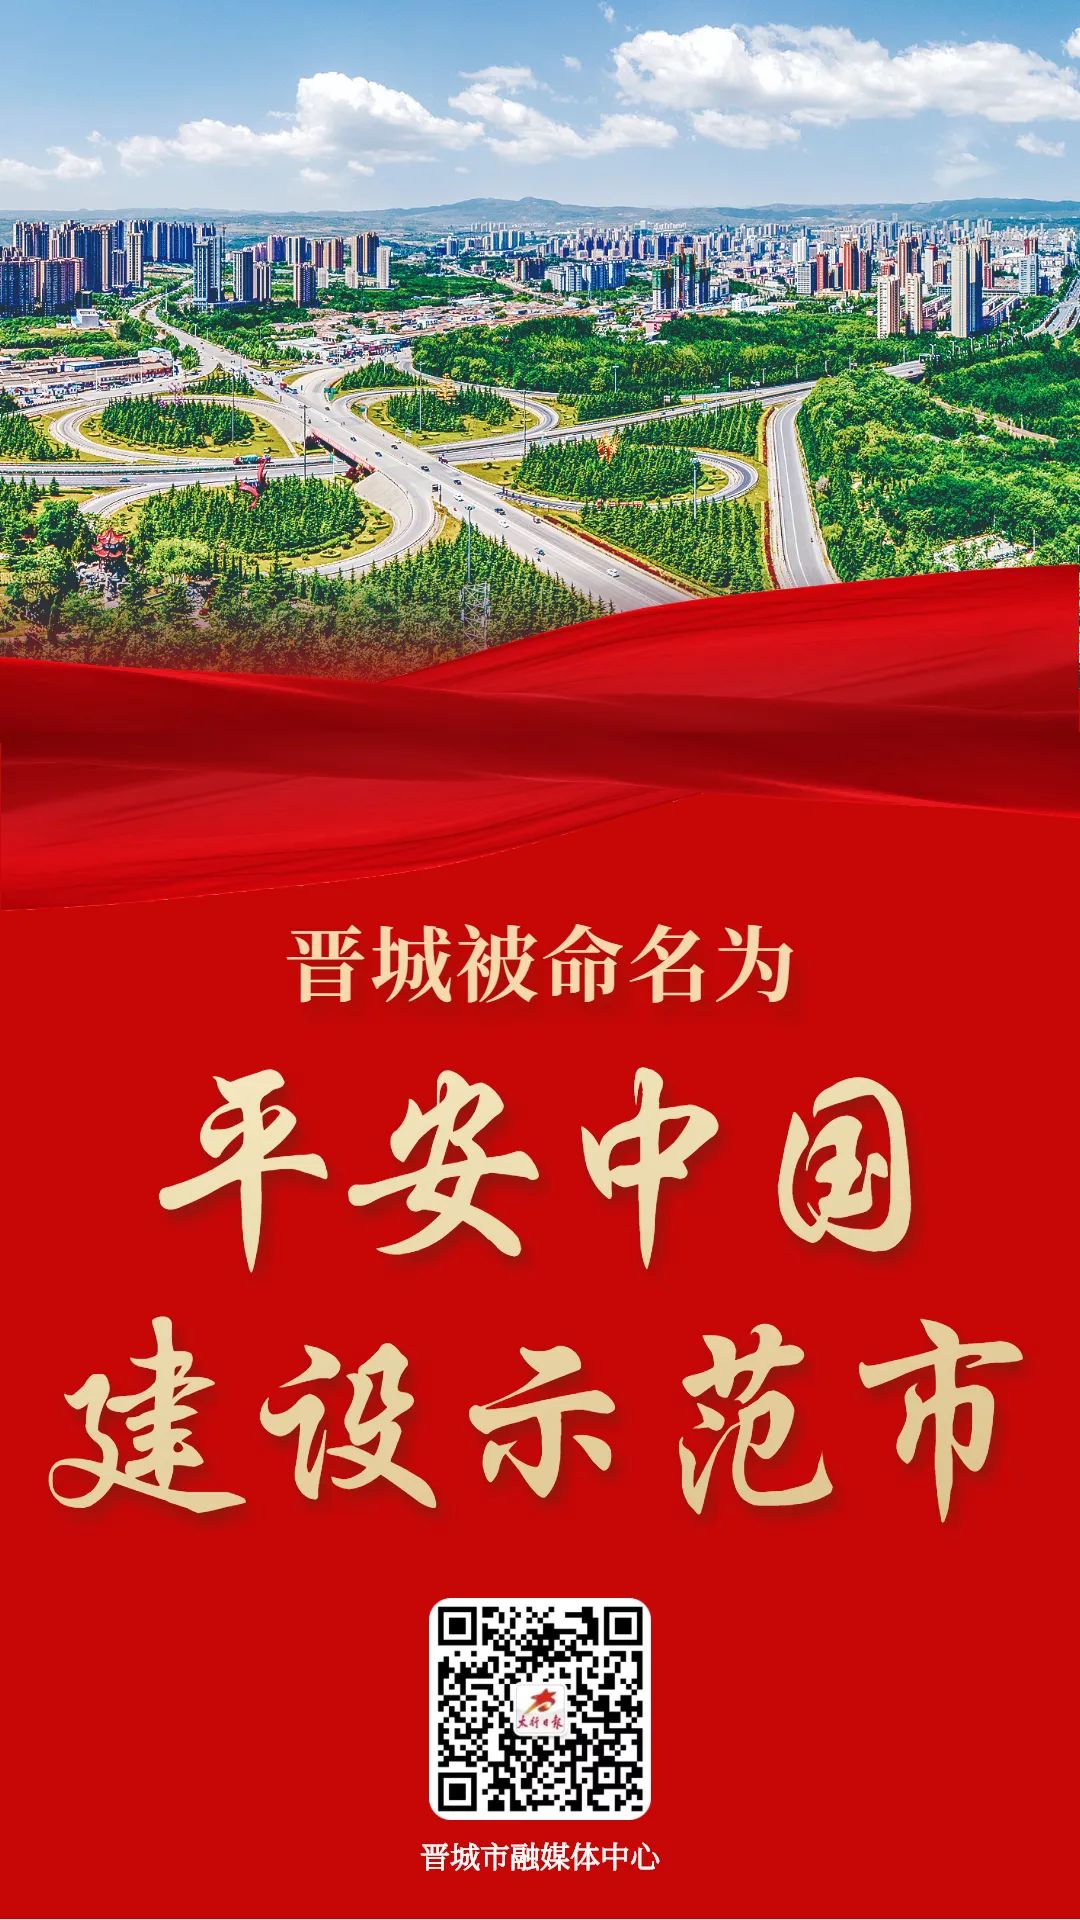 首届中国中西融合筋骨健康大会筹备工作会在京召开